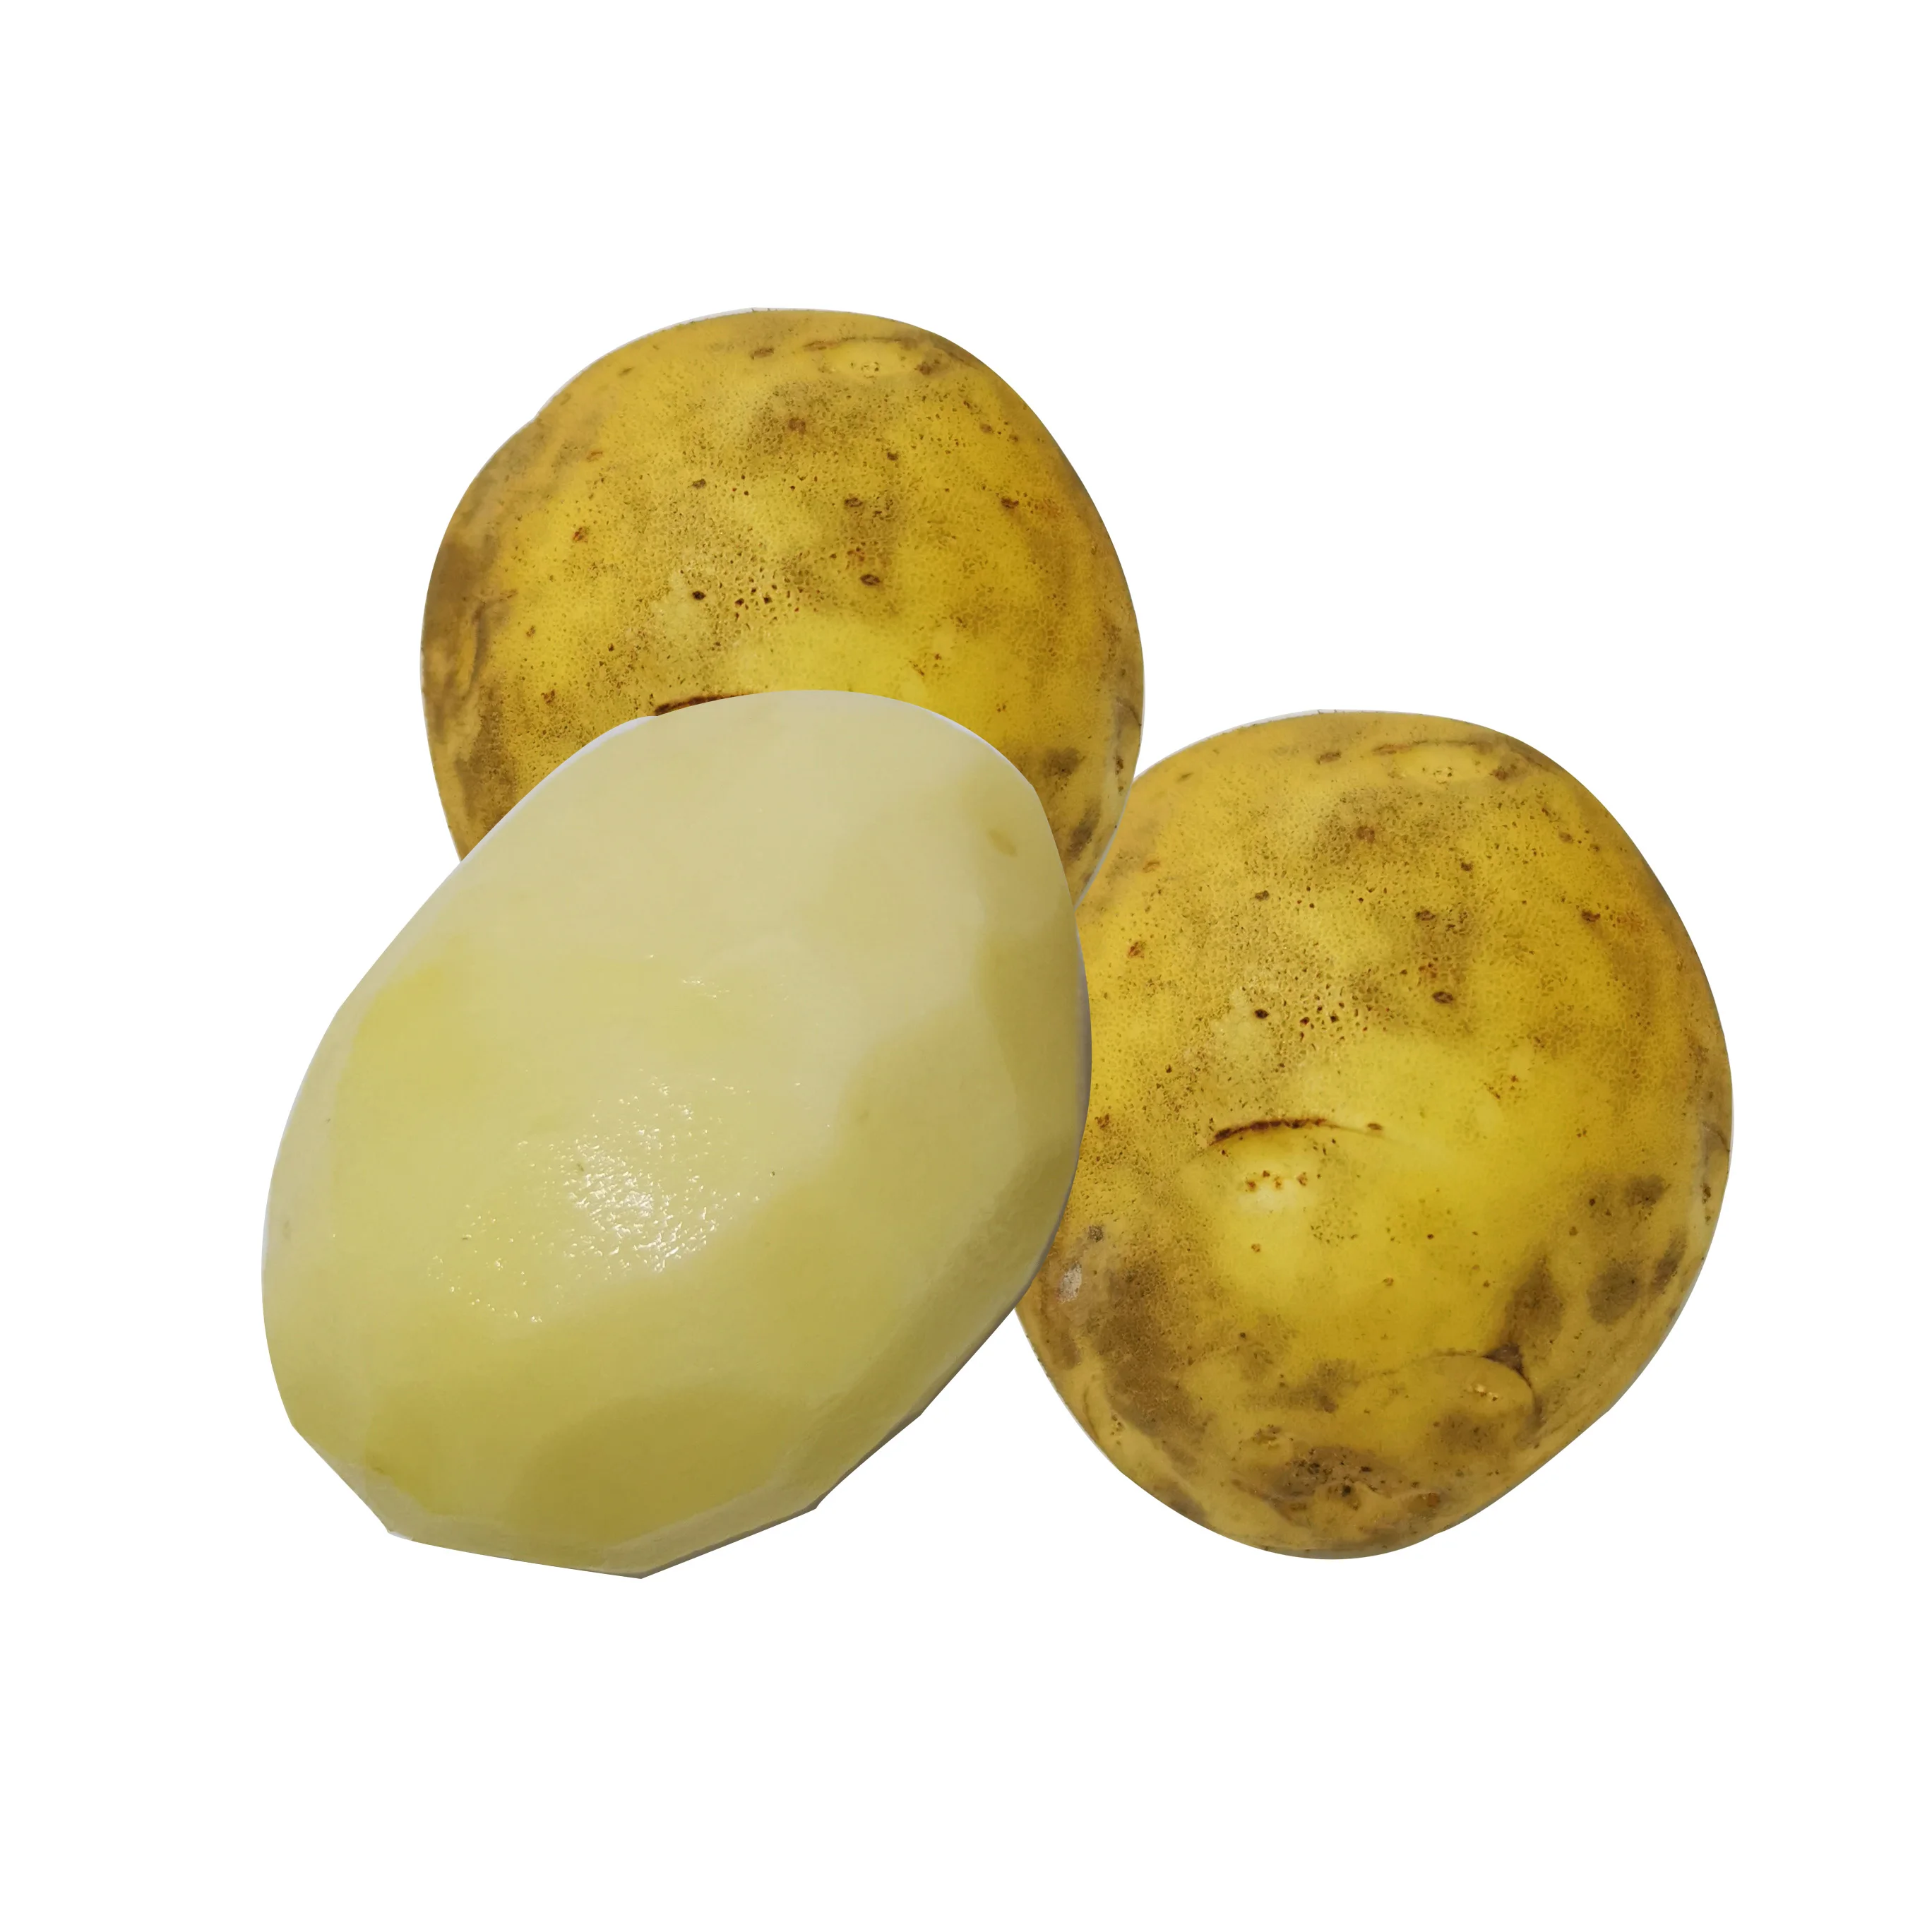 Дешевый органический свежий картофель желтого цвета оптом экспорт картофеля